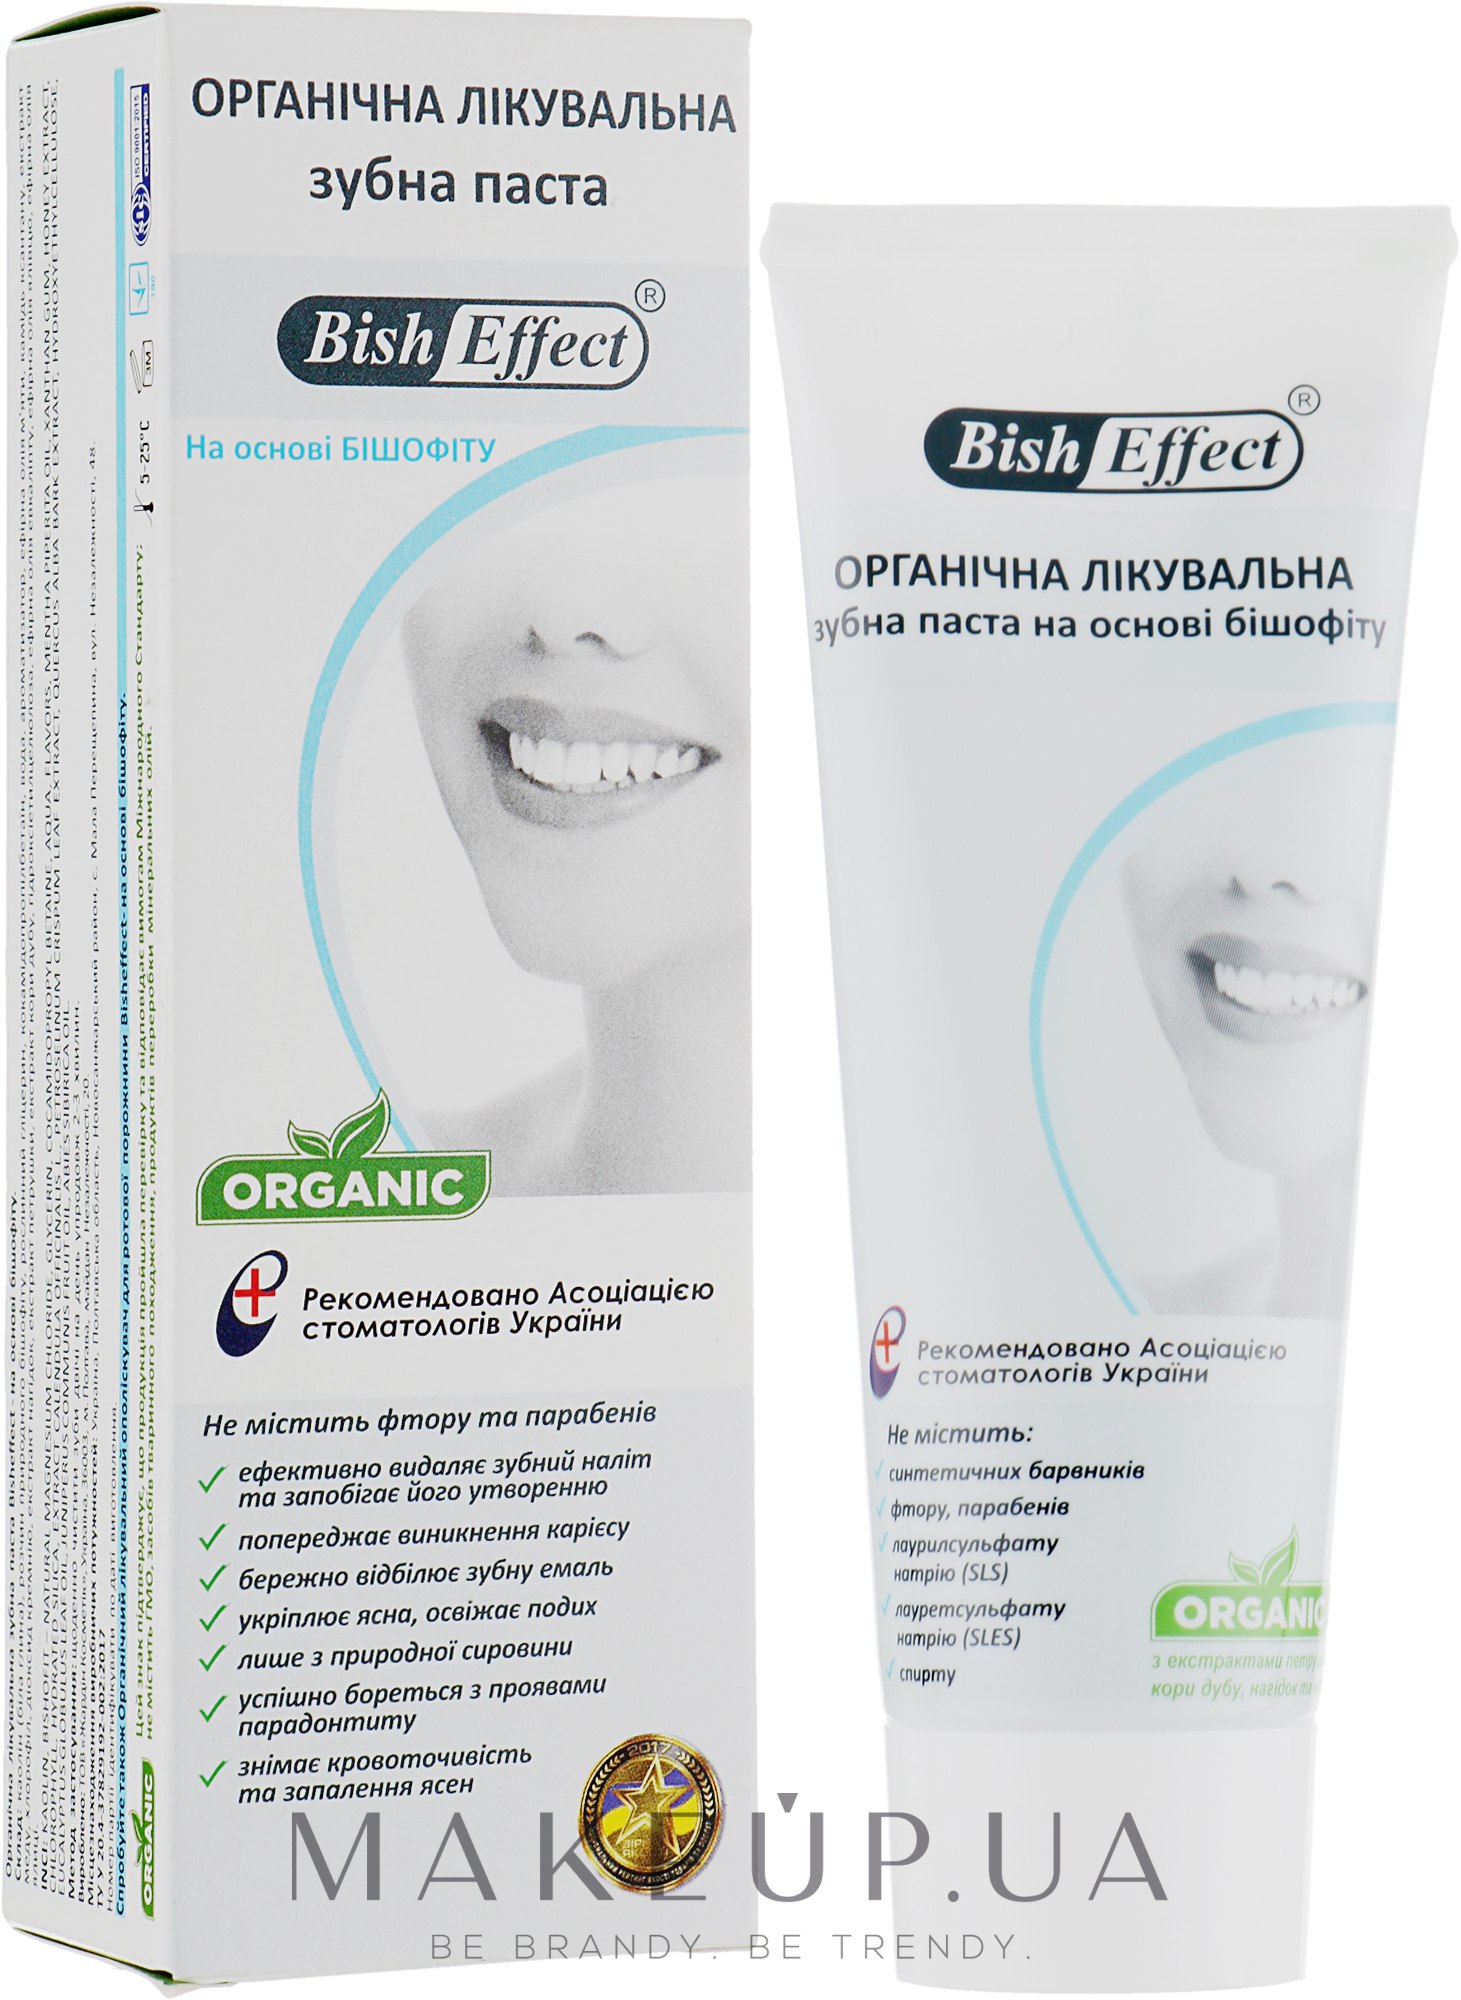 Органічна лікувальна зубна паста Bisheffect на основі бішофіту